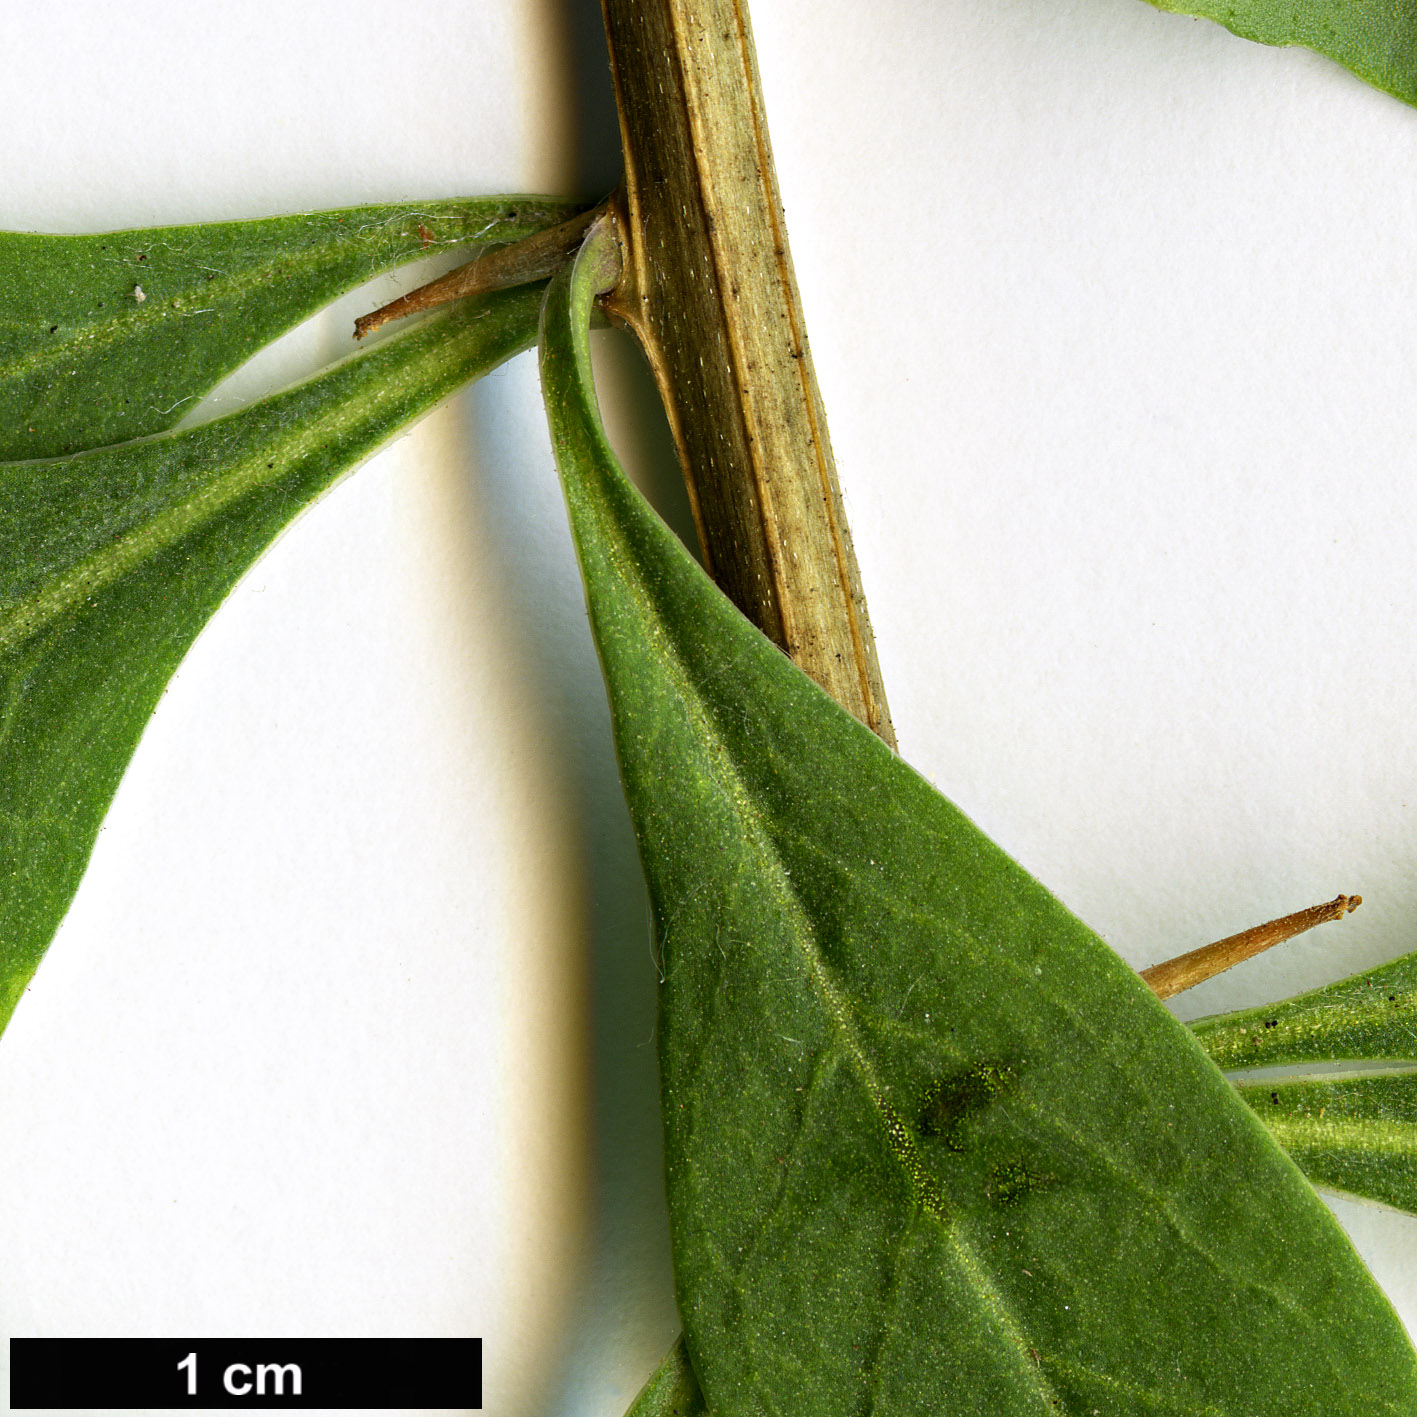 High resolution image: Family: Solanaceae - Genus: Lycium - Taxon: barbarum